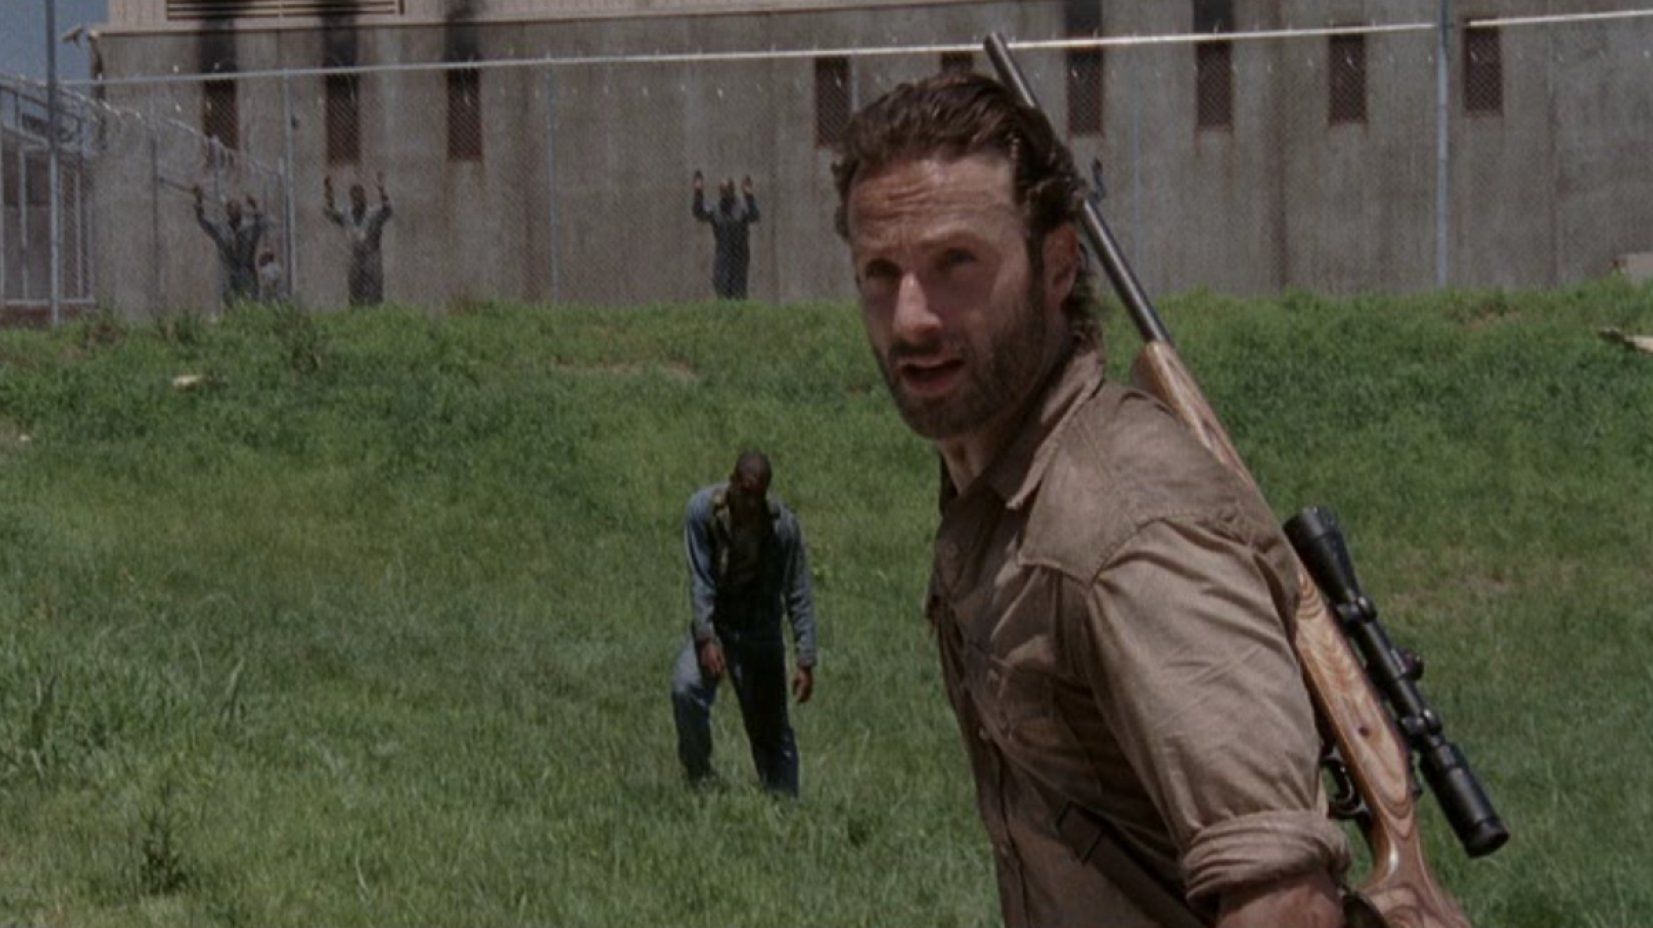 Rick outside of the prison gates in The Walking Dead season 3